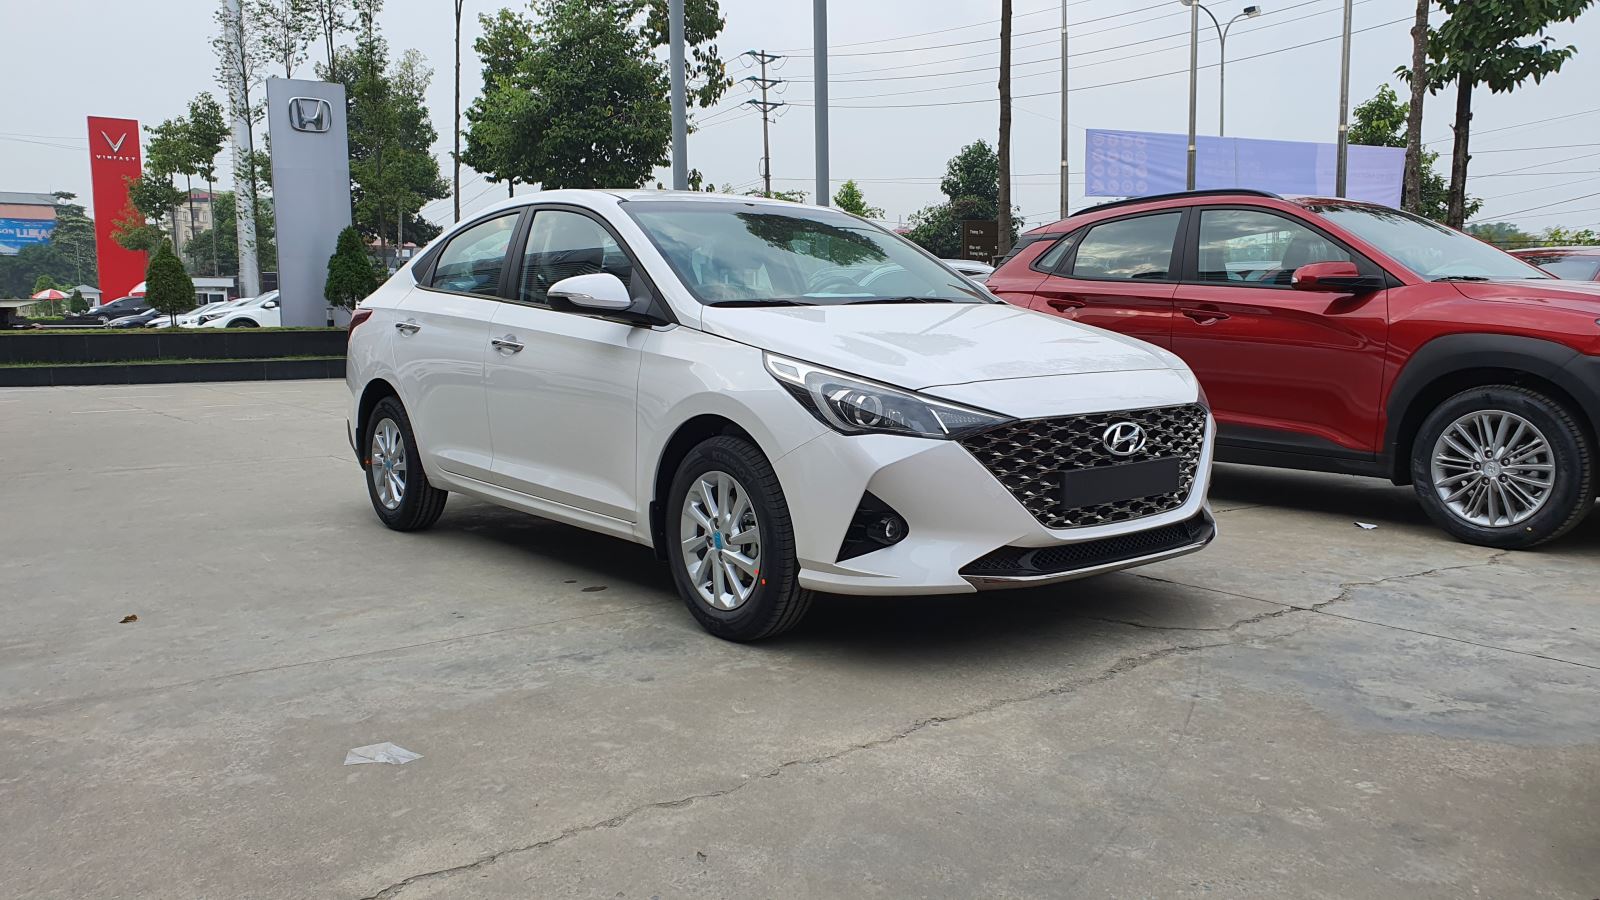 Hyundai Accent tiếp tục là mẫu xe bán chạy nhất thị trường.